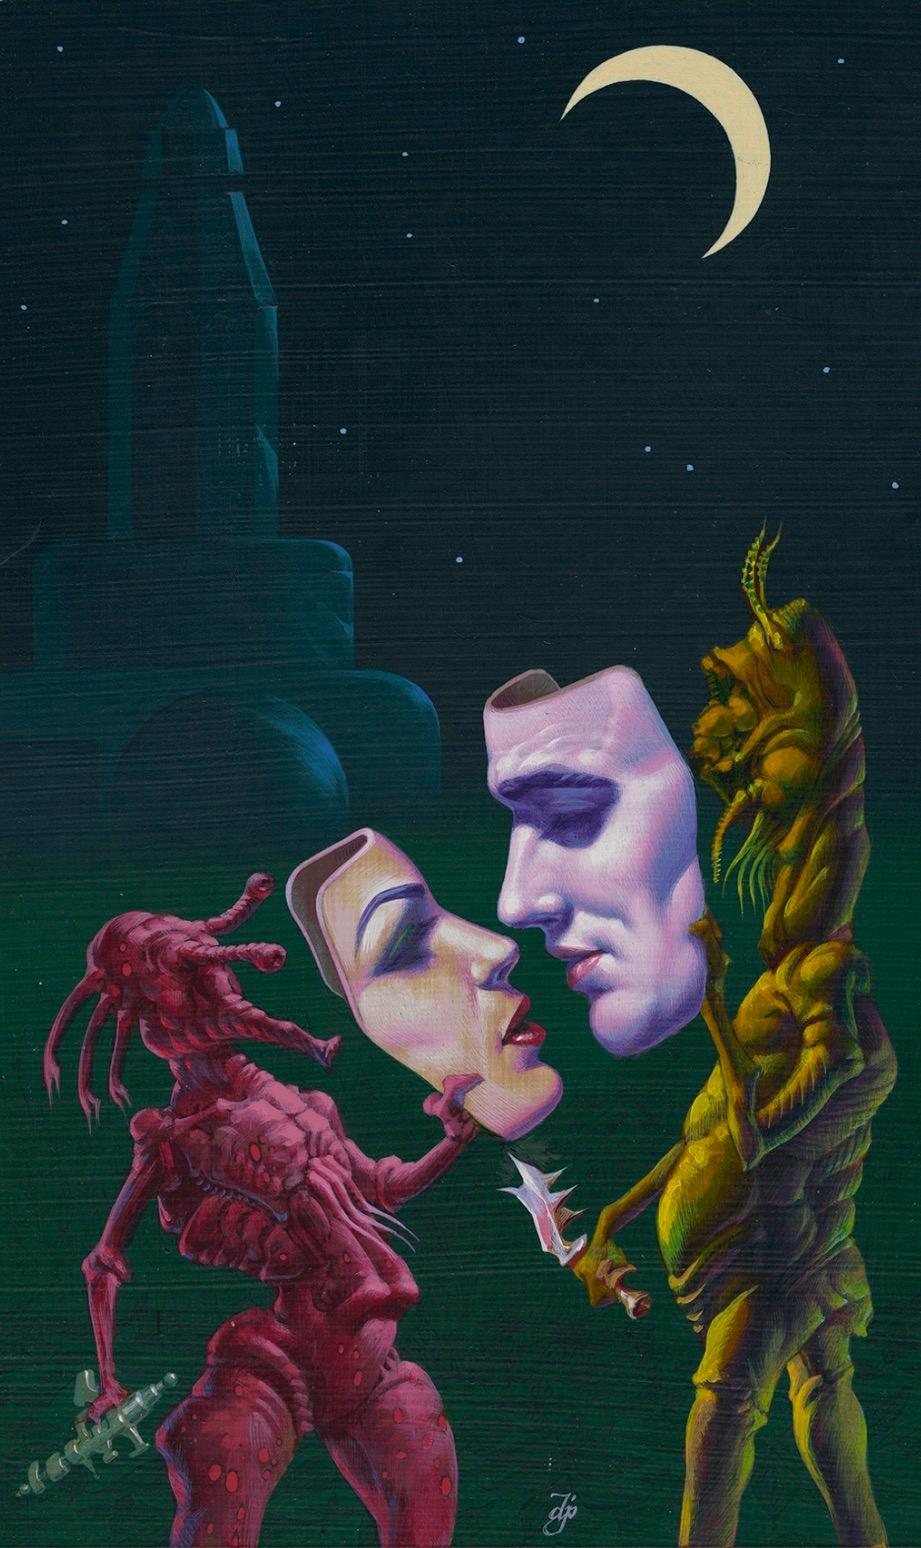 Alienen mit menschlichen Masken – Painting von Don Ivan Punchatz